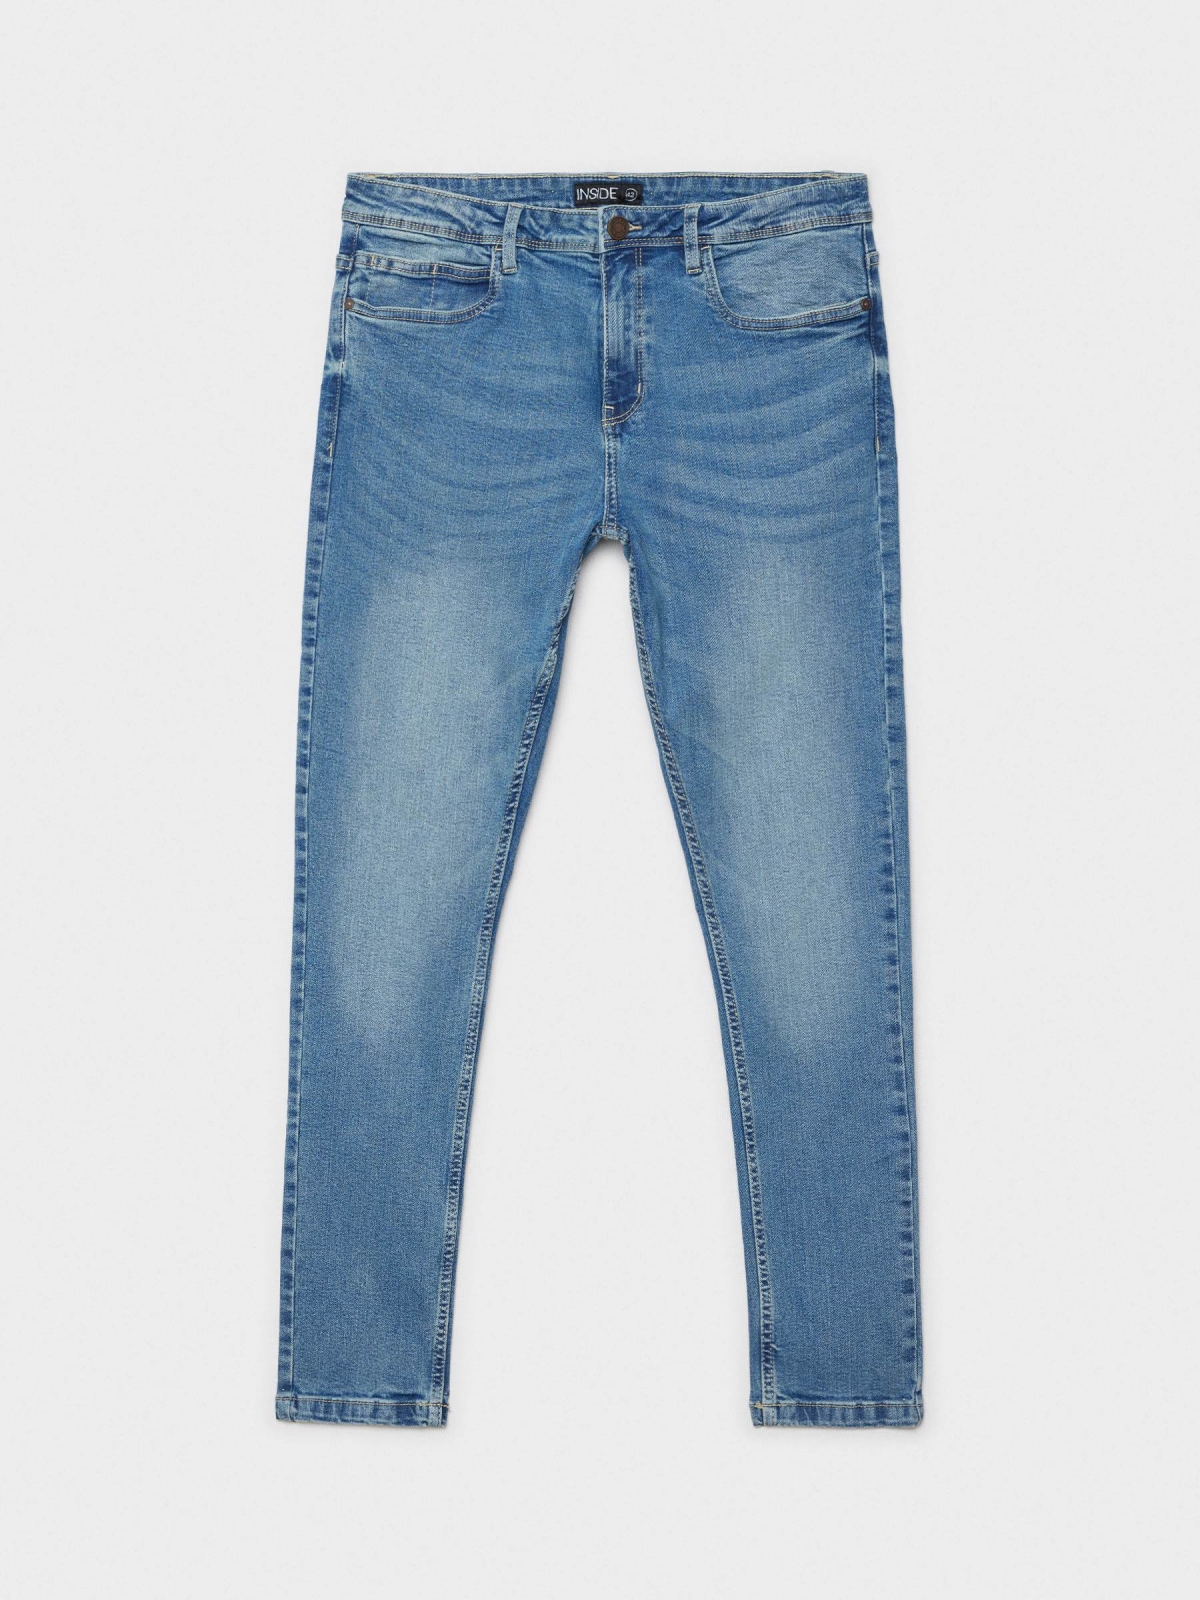  Jeans skinny desgastados azul